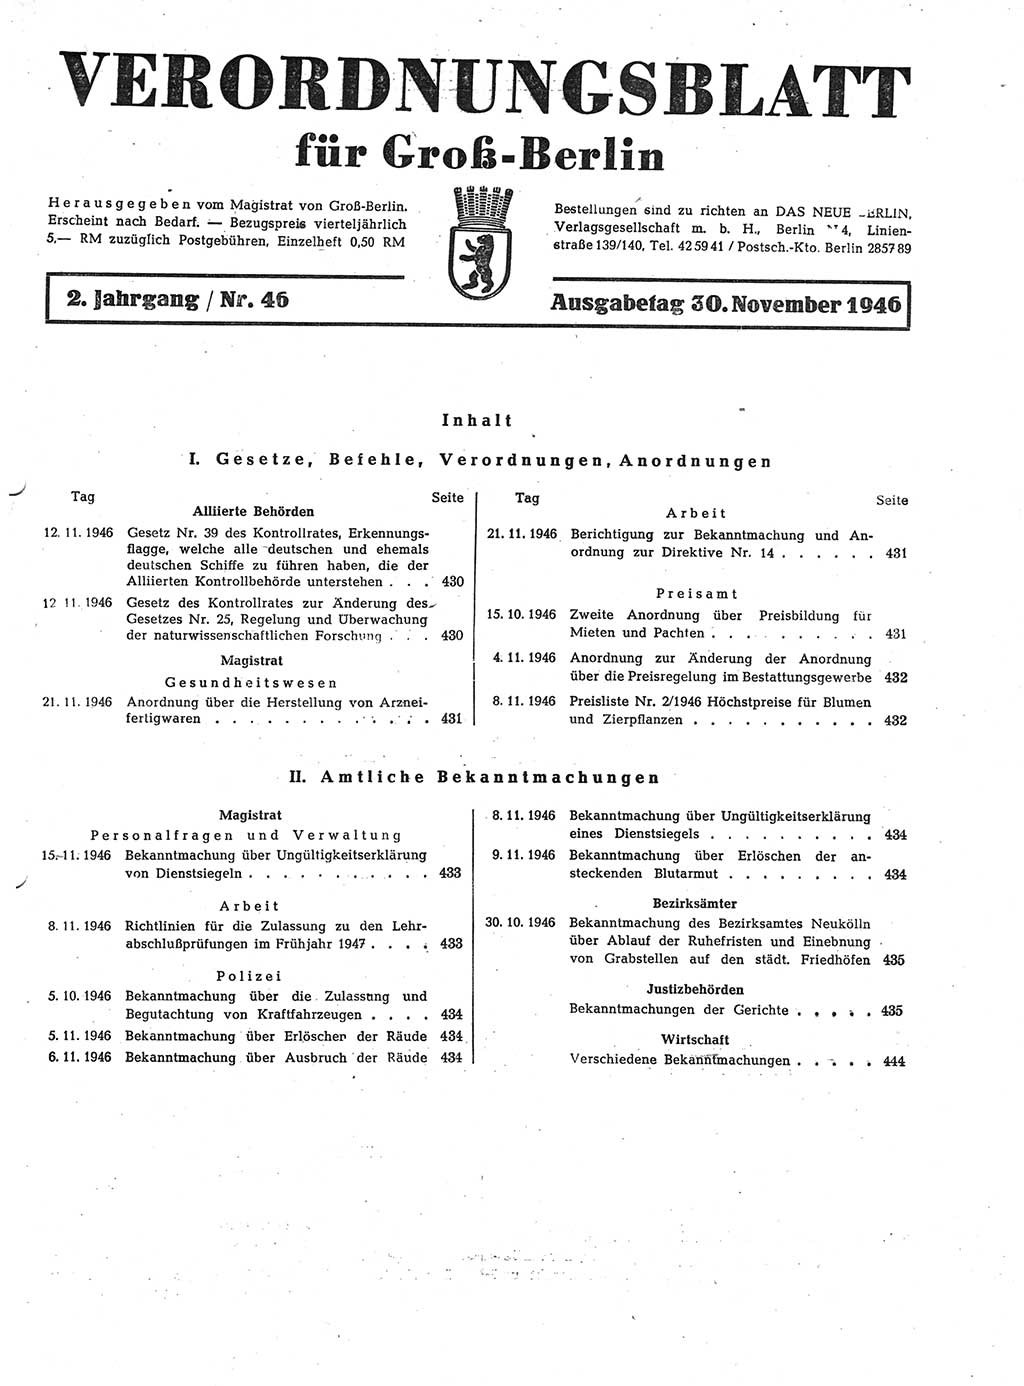 Verordnungsblatt (VOBl.) der Stadt Berlin, für Groß-Berlin 1946, Seite 429 (VOBl. Bln. 1946, S. 429)